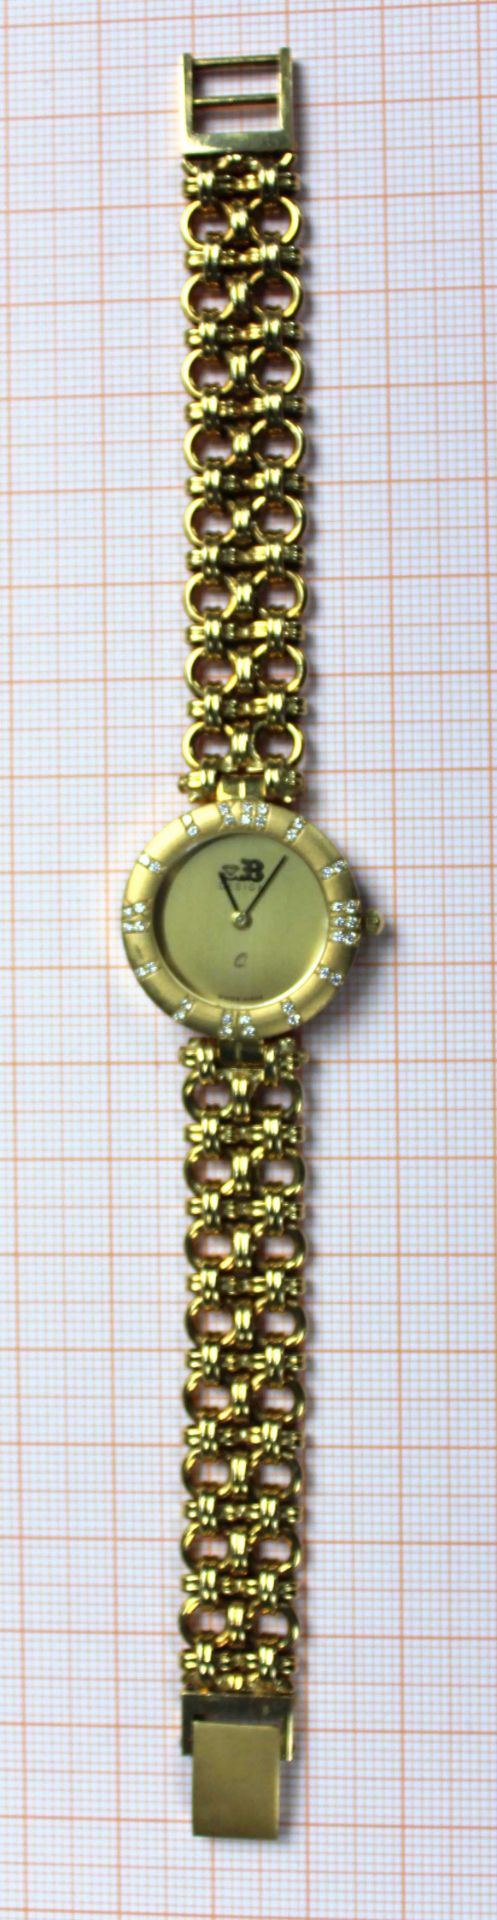 Schmuck Armbanduhr Gelb Gold 750, besetzt mit 36 kleinen Brillanten.58,5 Gramm Gesamtgewicht. - Bild 10 aus 11